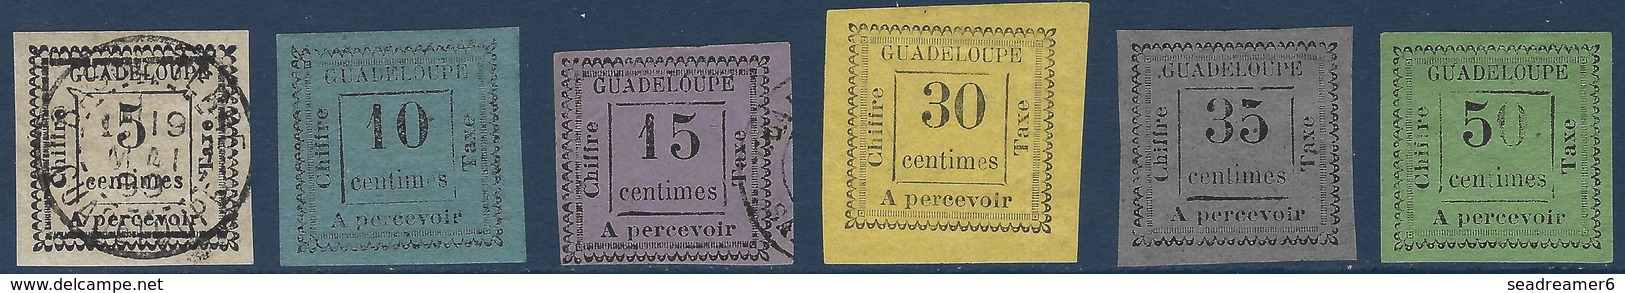 France Colonies Guadeloupe Taxe N°6,7,8,10,11 & 12 Neufs Et Oblitérés Plutot Tres Belle Qualité !! - Timbres-taxe